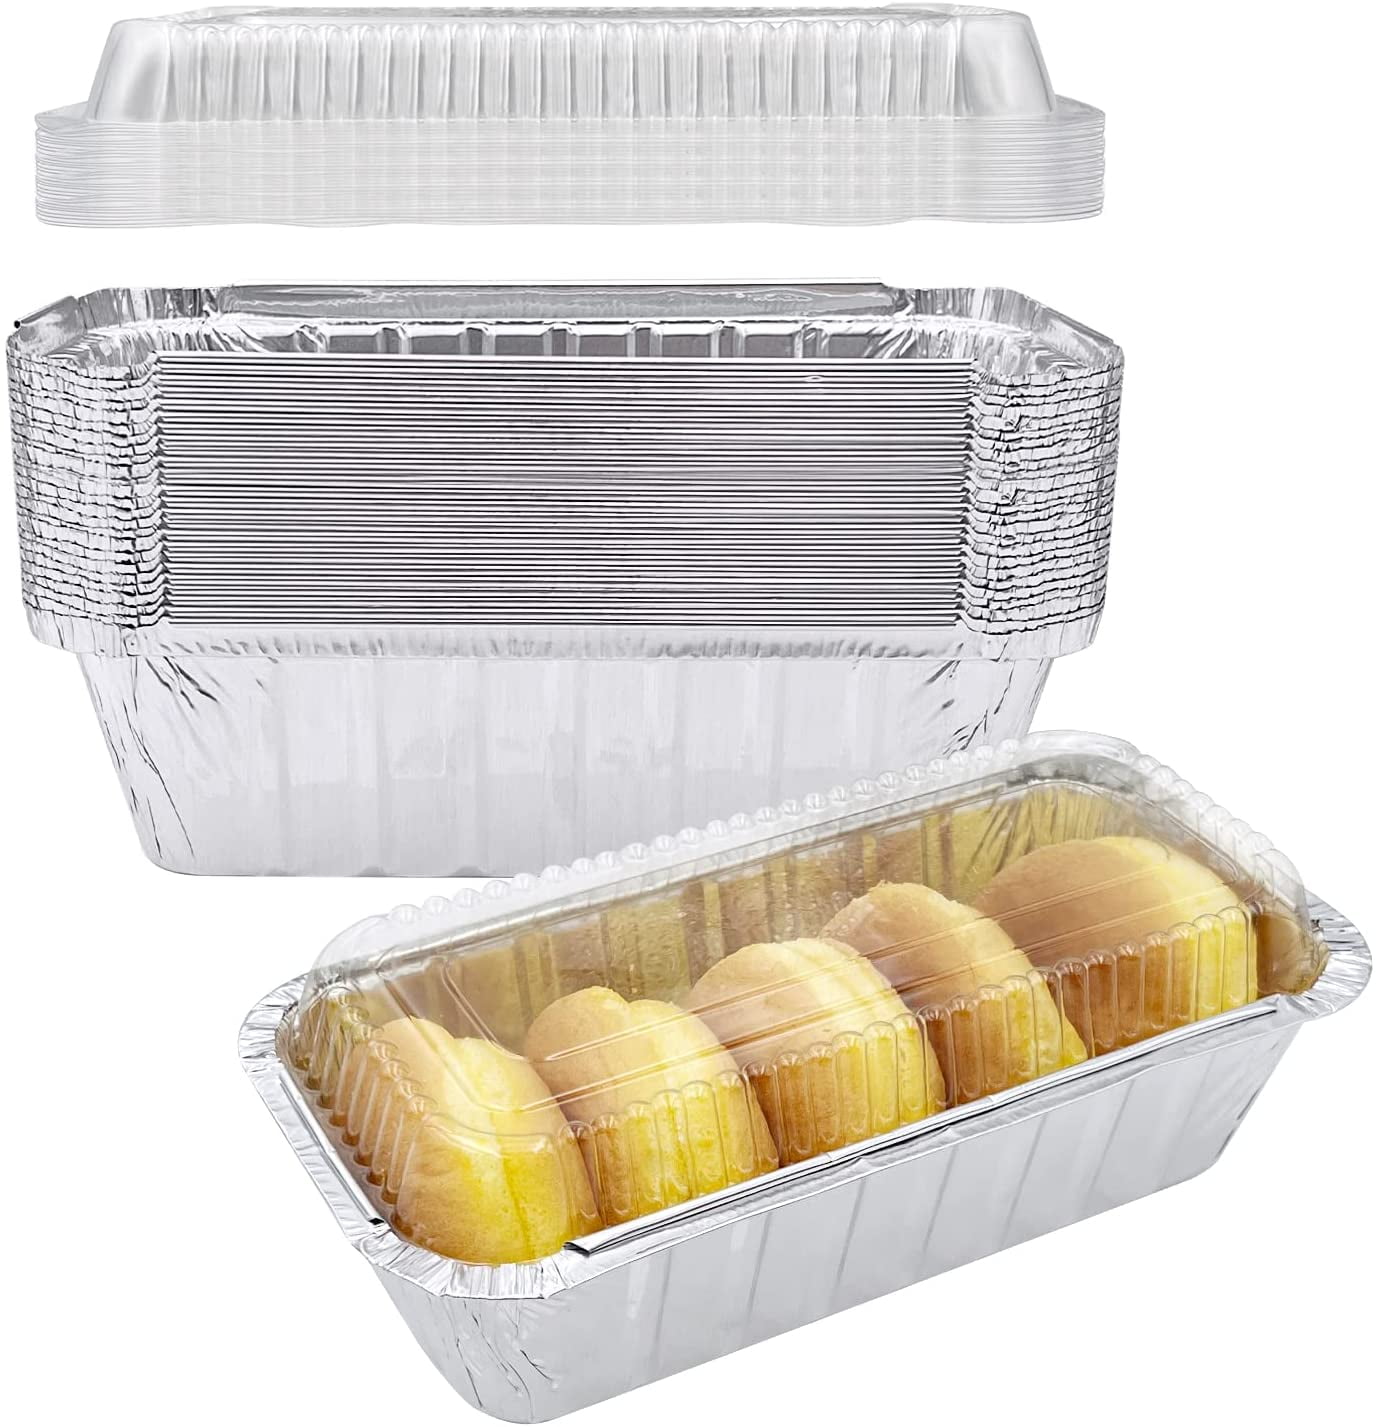 EZ Foil Mini Loaf Pans, 5.75 x 3.25 inch, 3 Count 